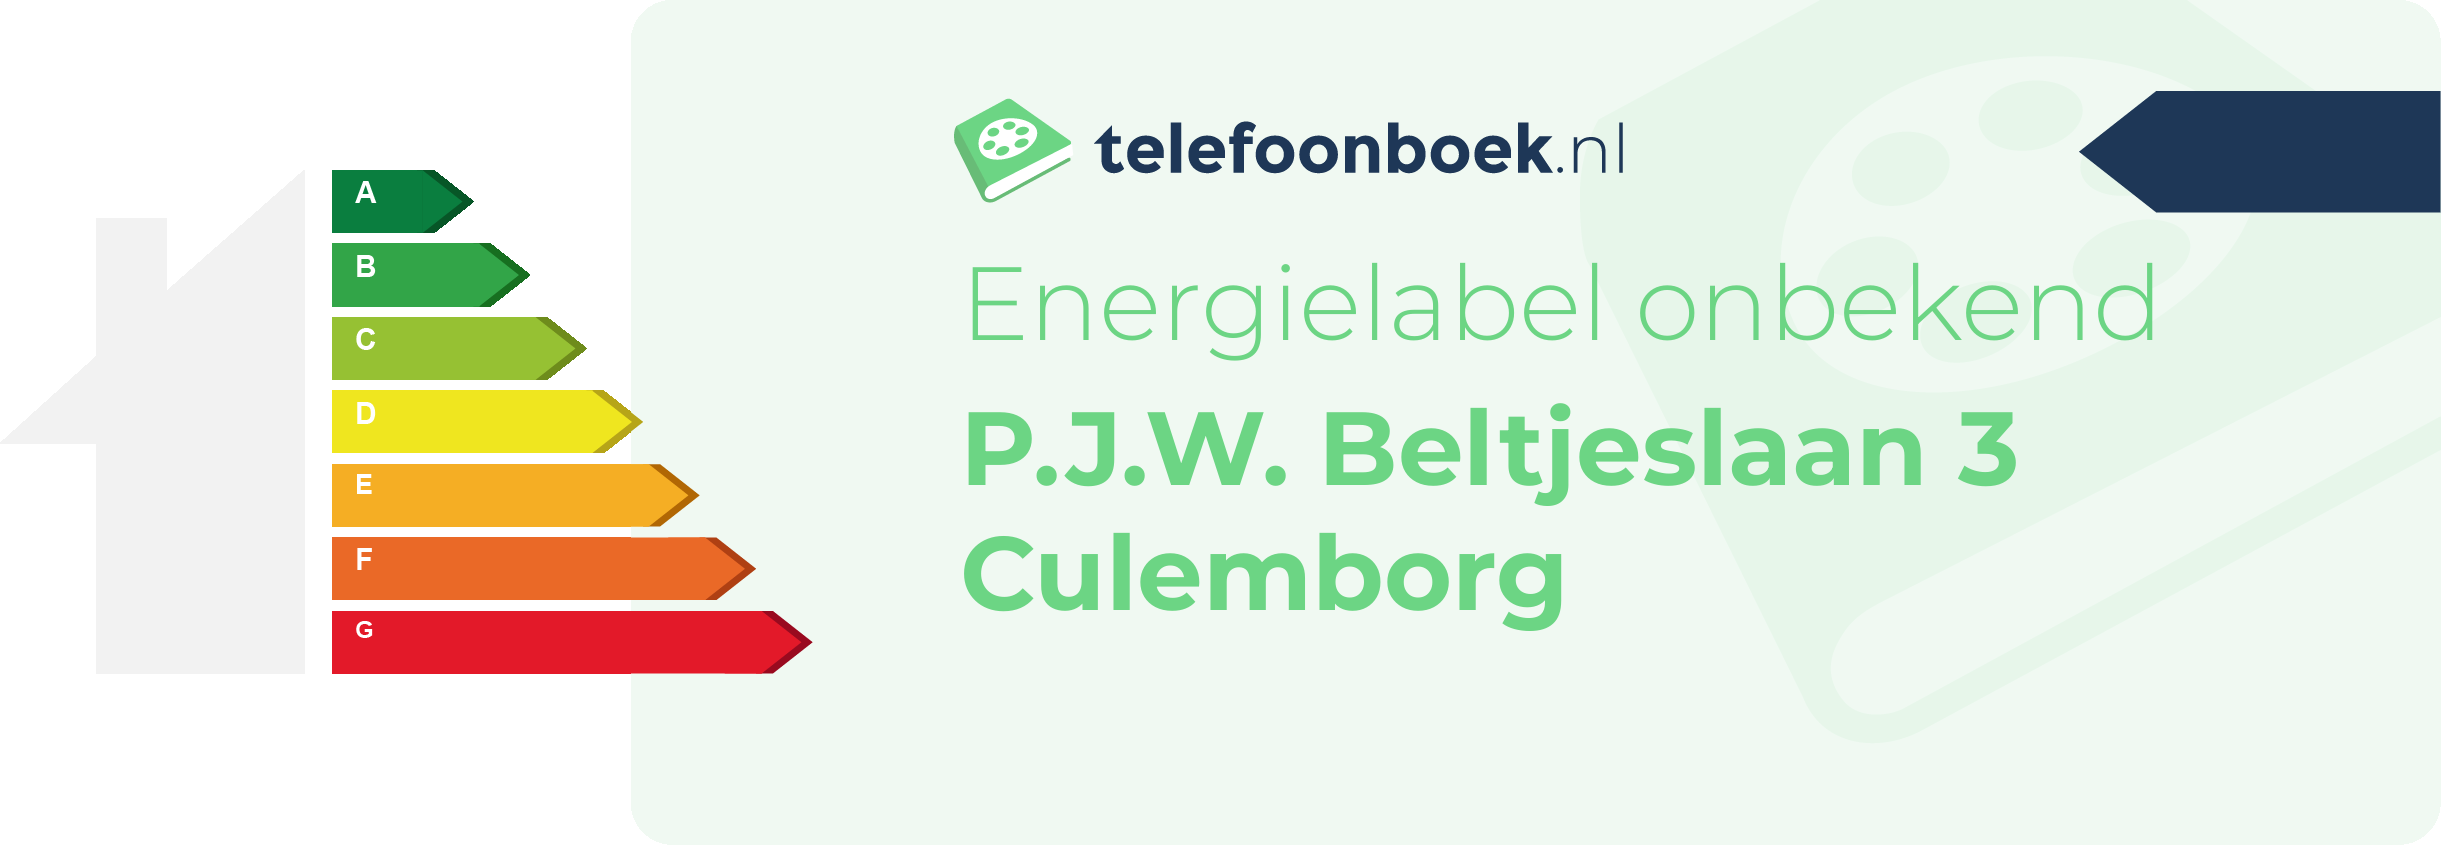 Energielabel P.J.W. Beltjeslaan 3 Culemborg